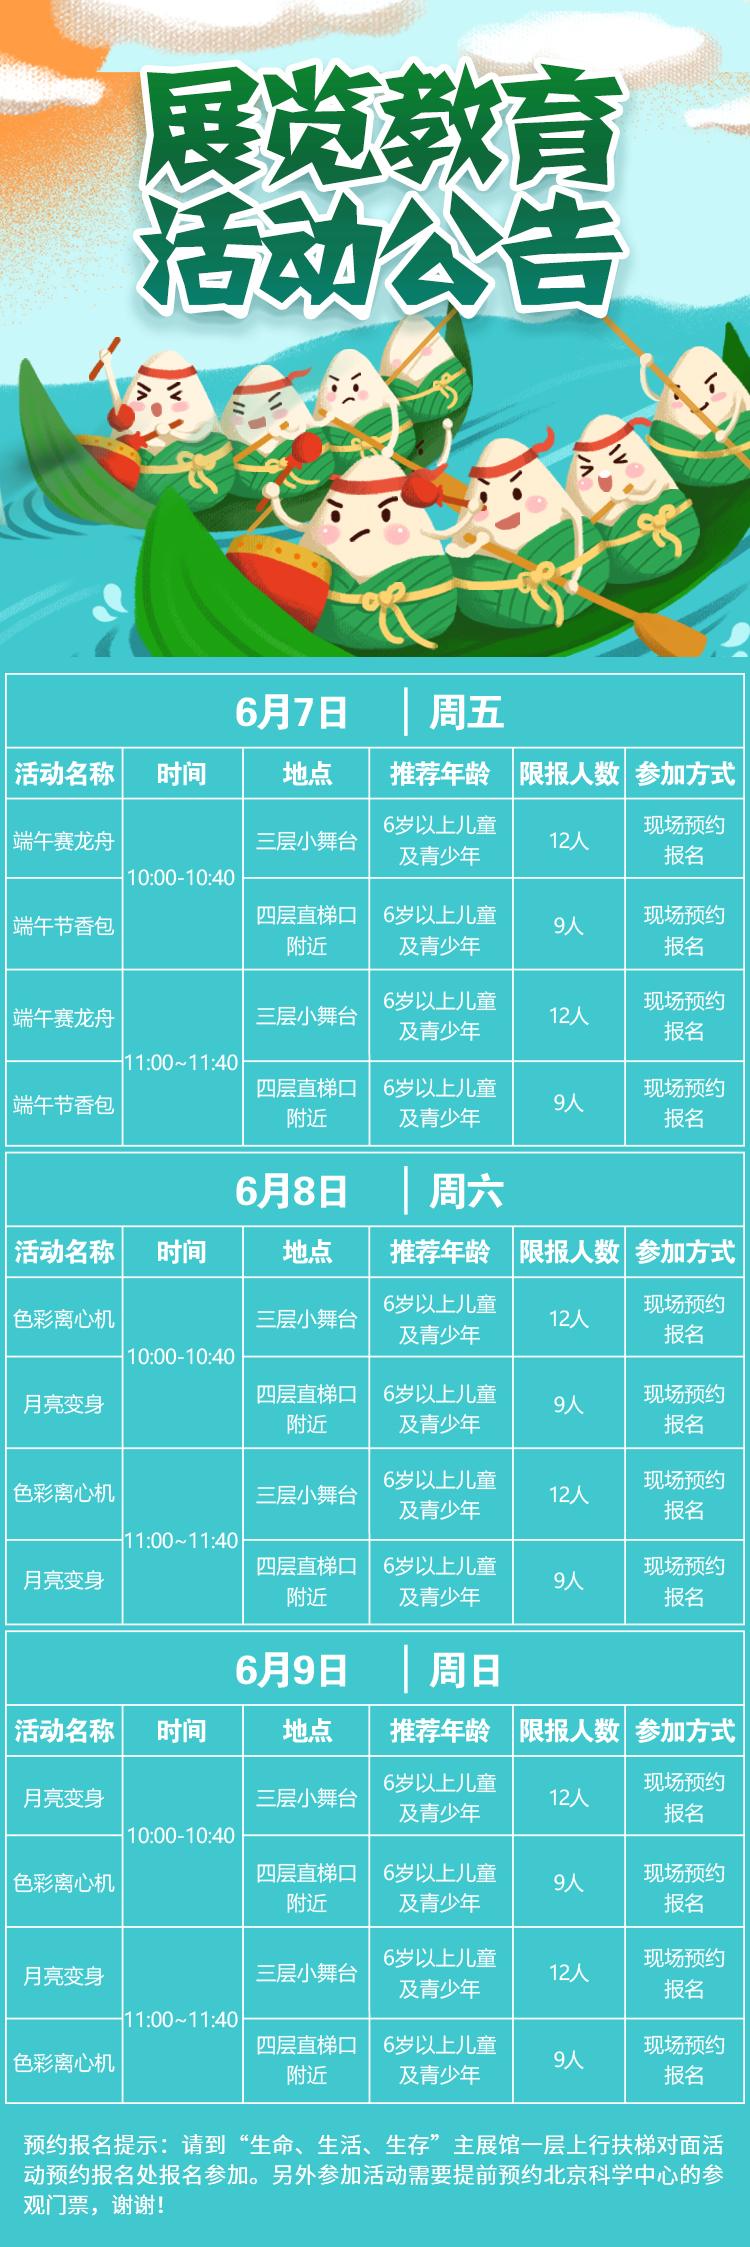 2019北京科学中心端午节活动时间地点预告